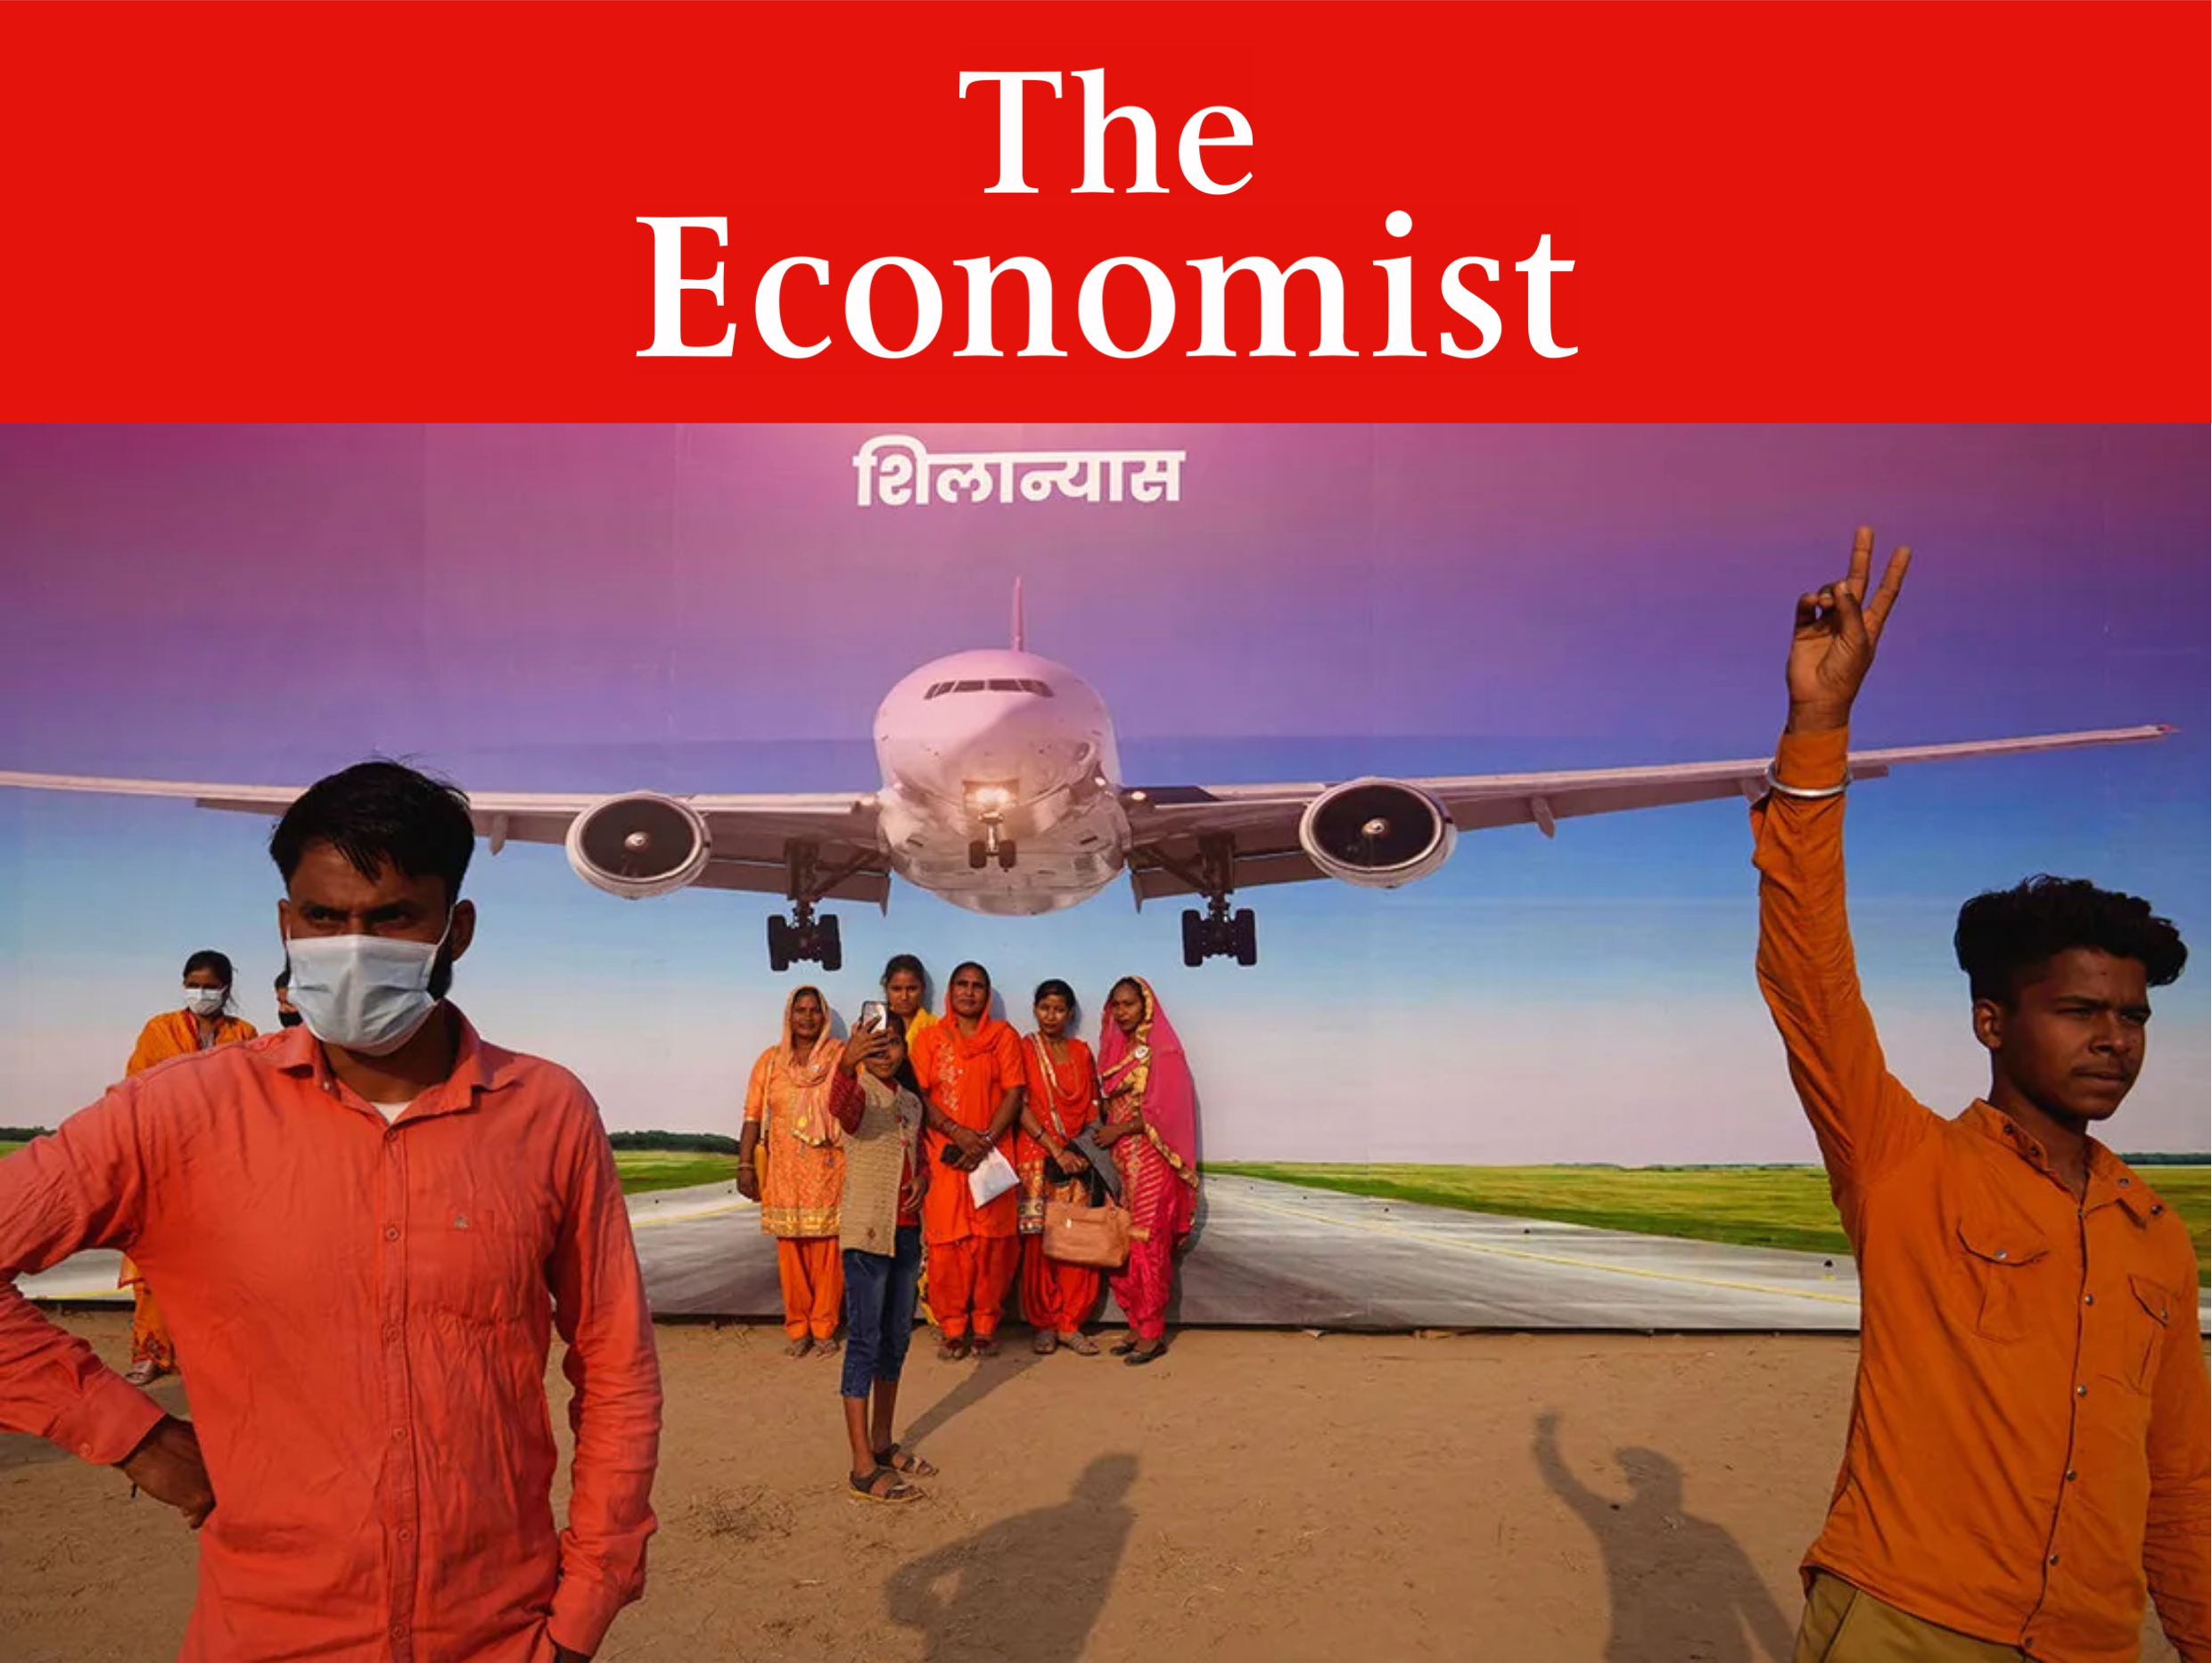 В Индии наблюдается бурный рост авиационной отрасли